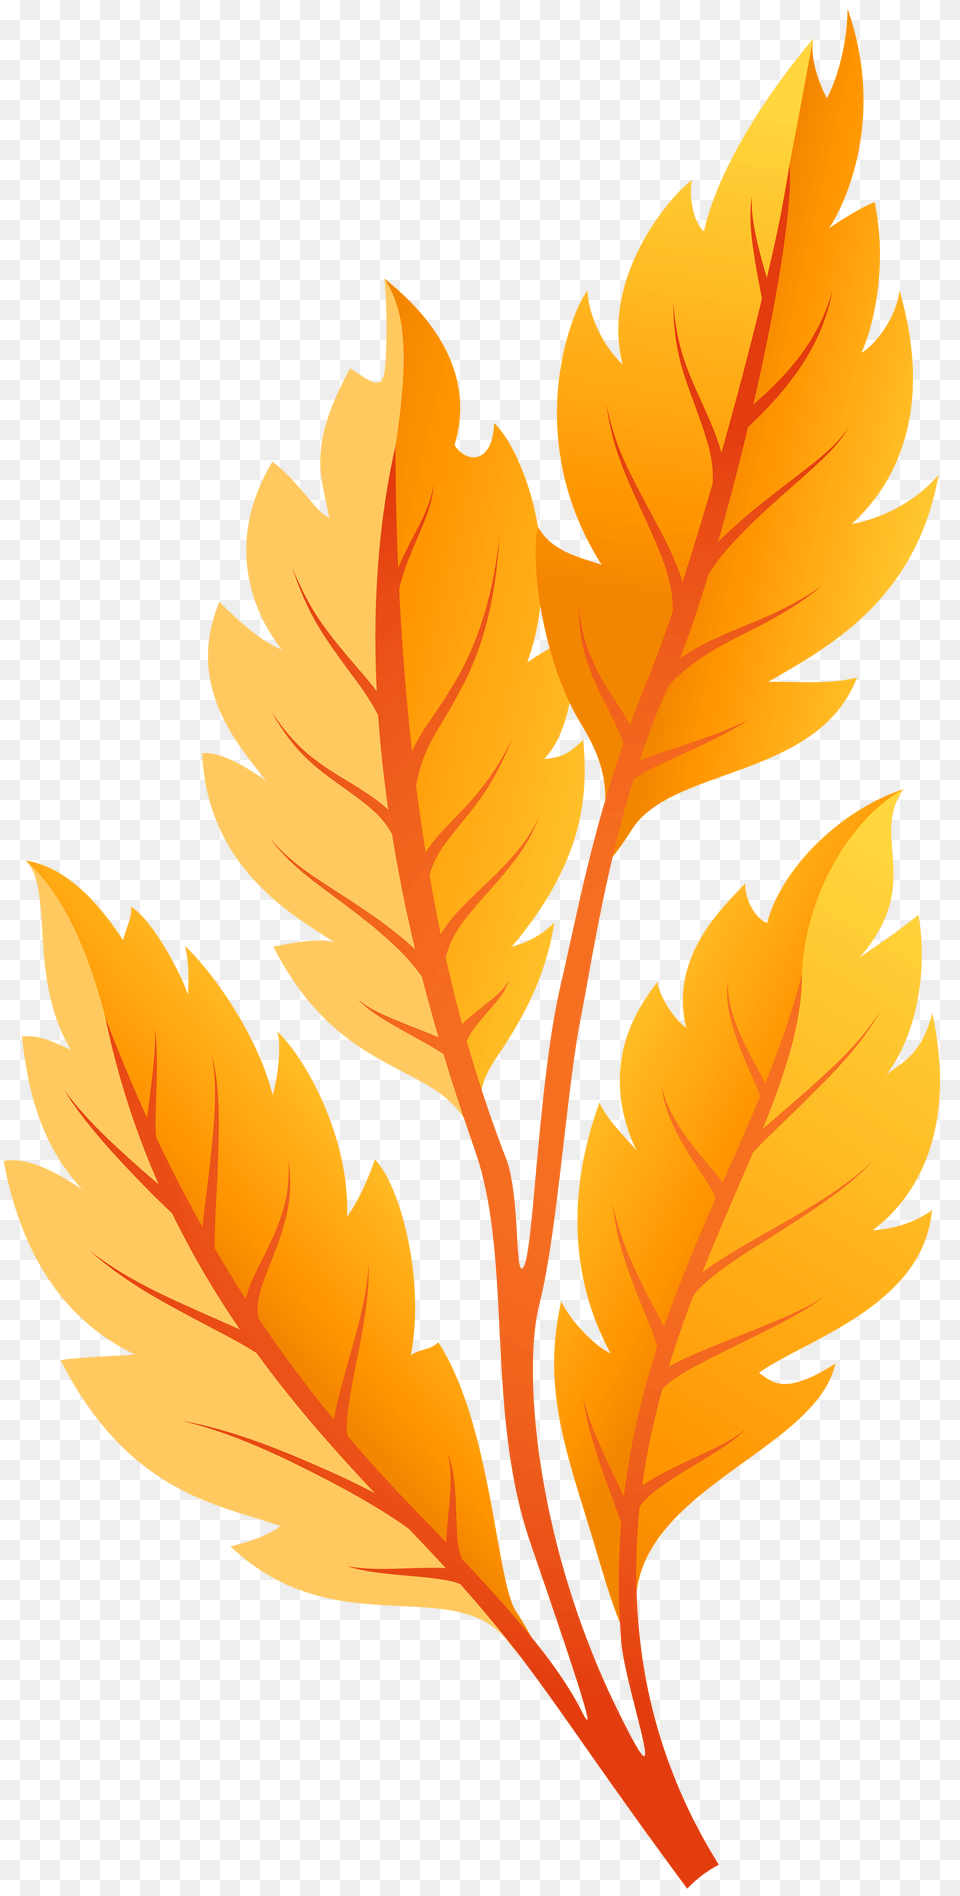 Fall Leaves Clipart Yellow Orange Leaves Orange Leaves Illustration, Leaf, Plant, Tree, Maple Leaf Png